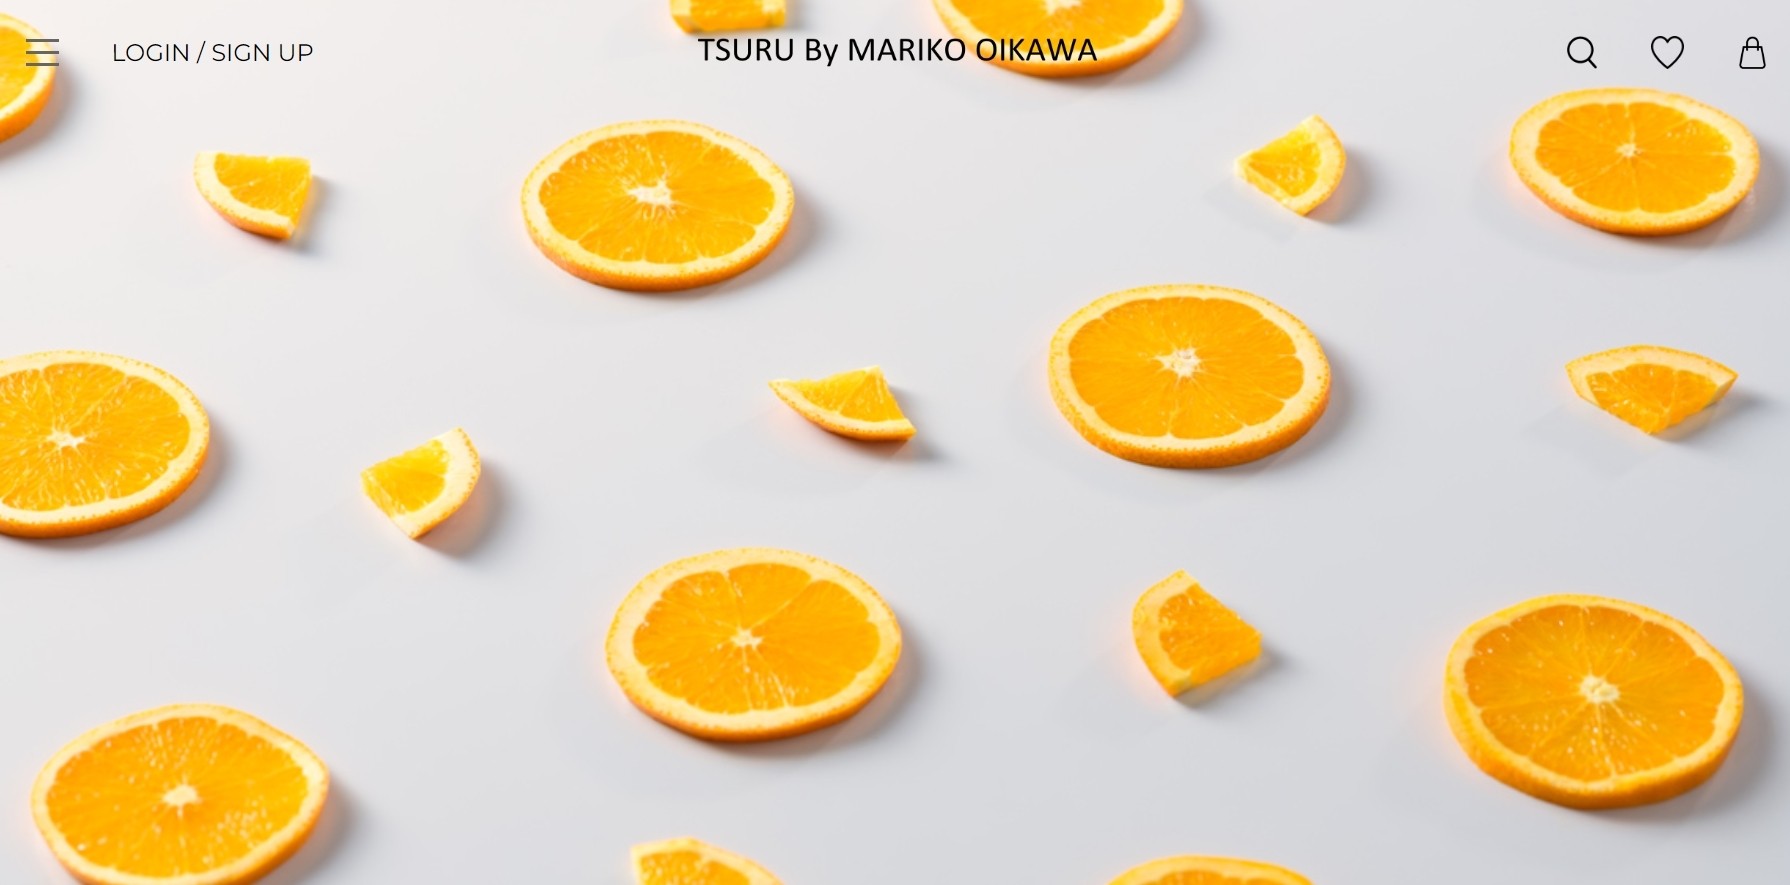 TSURU by Mariko Oikawa